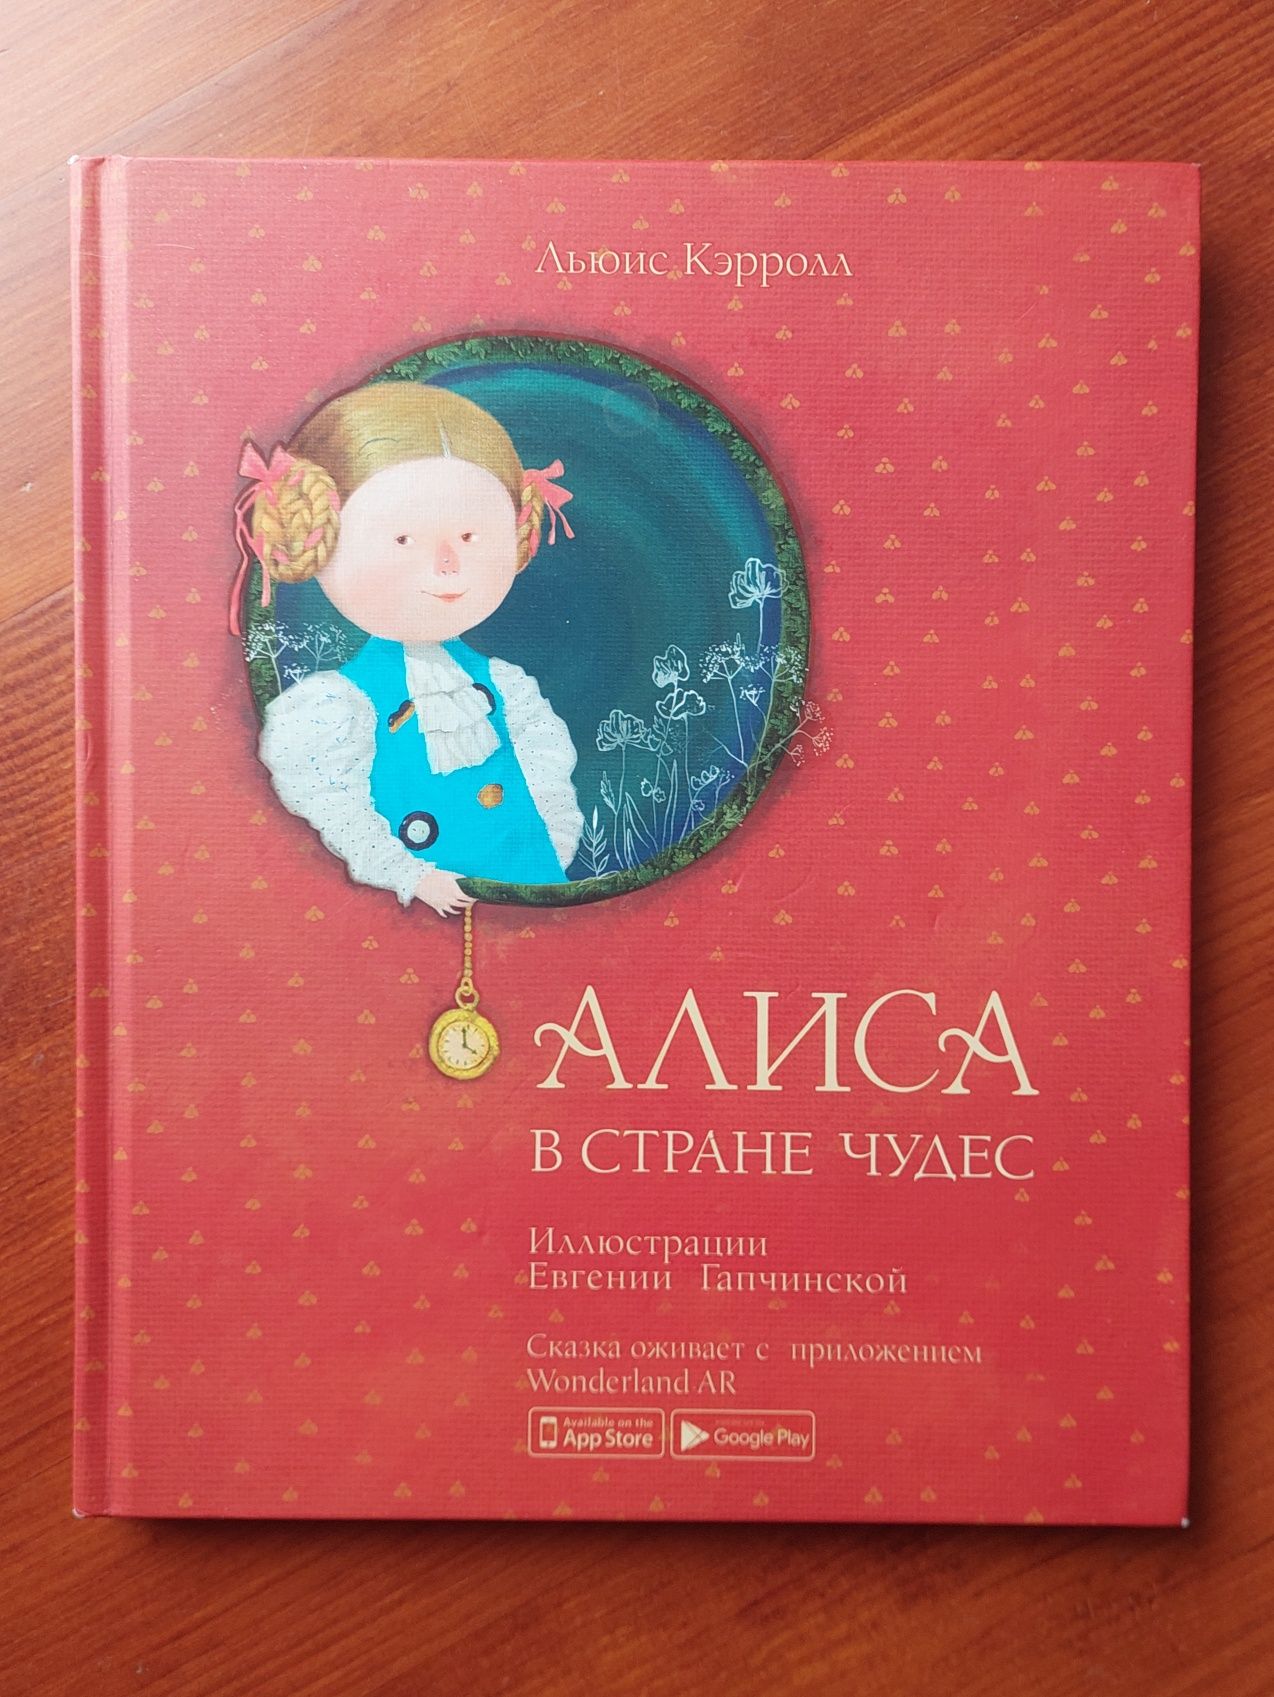 Алиса в стране чудес, издательство Ранок